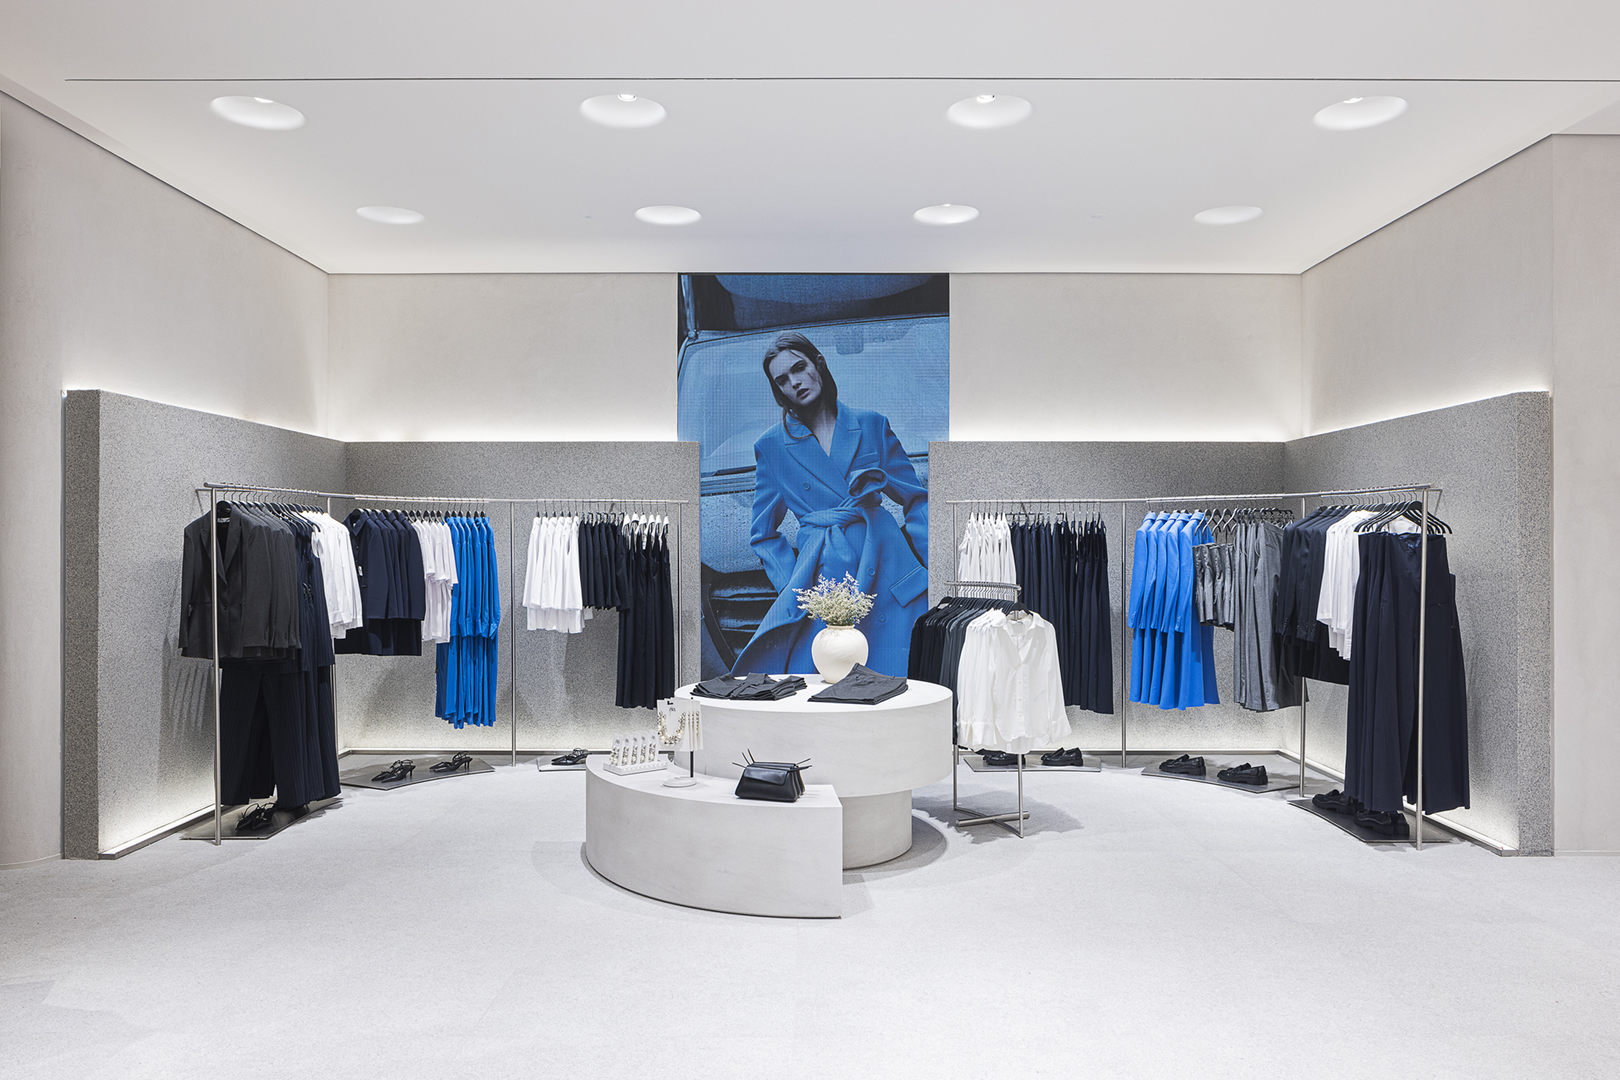 Nova loja da Zara impressiona pela arquitetura inteligente e